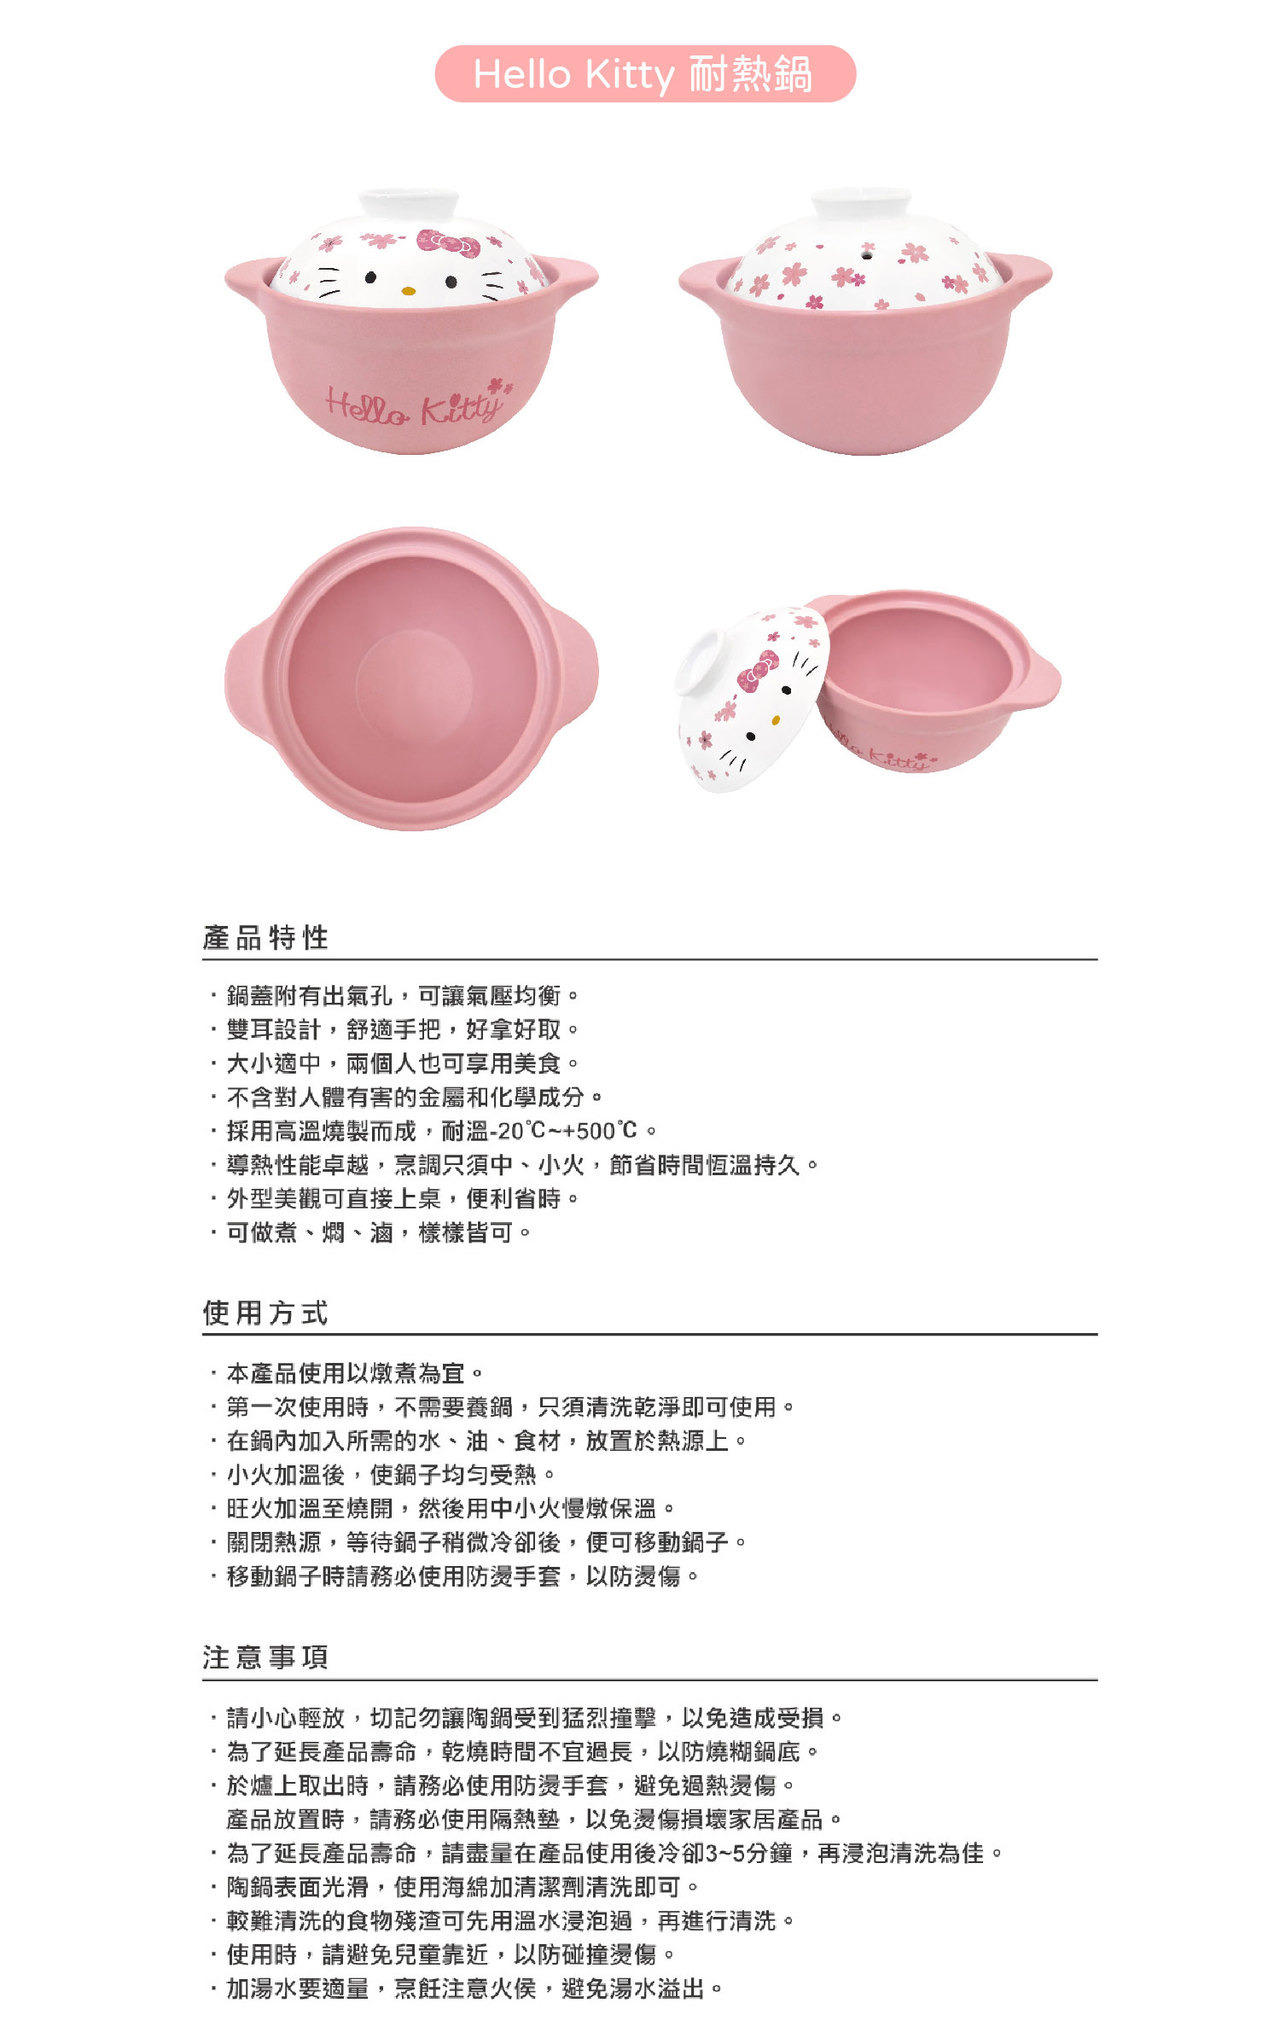 三麗鷗系列Hello Kitty櫻花耐熱鍋